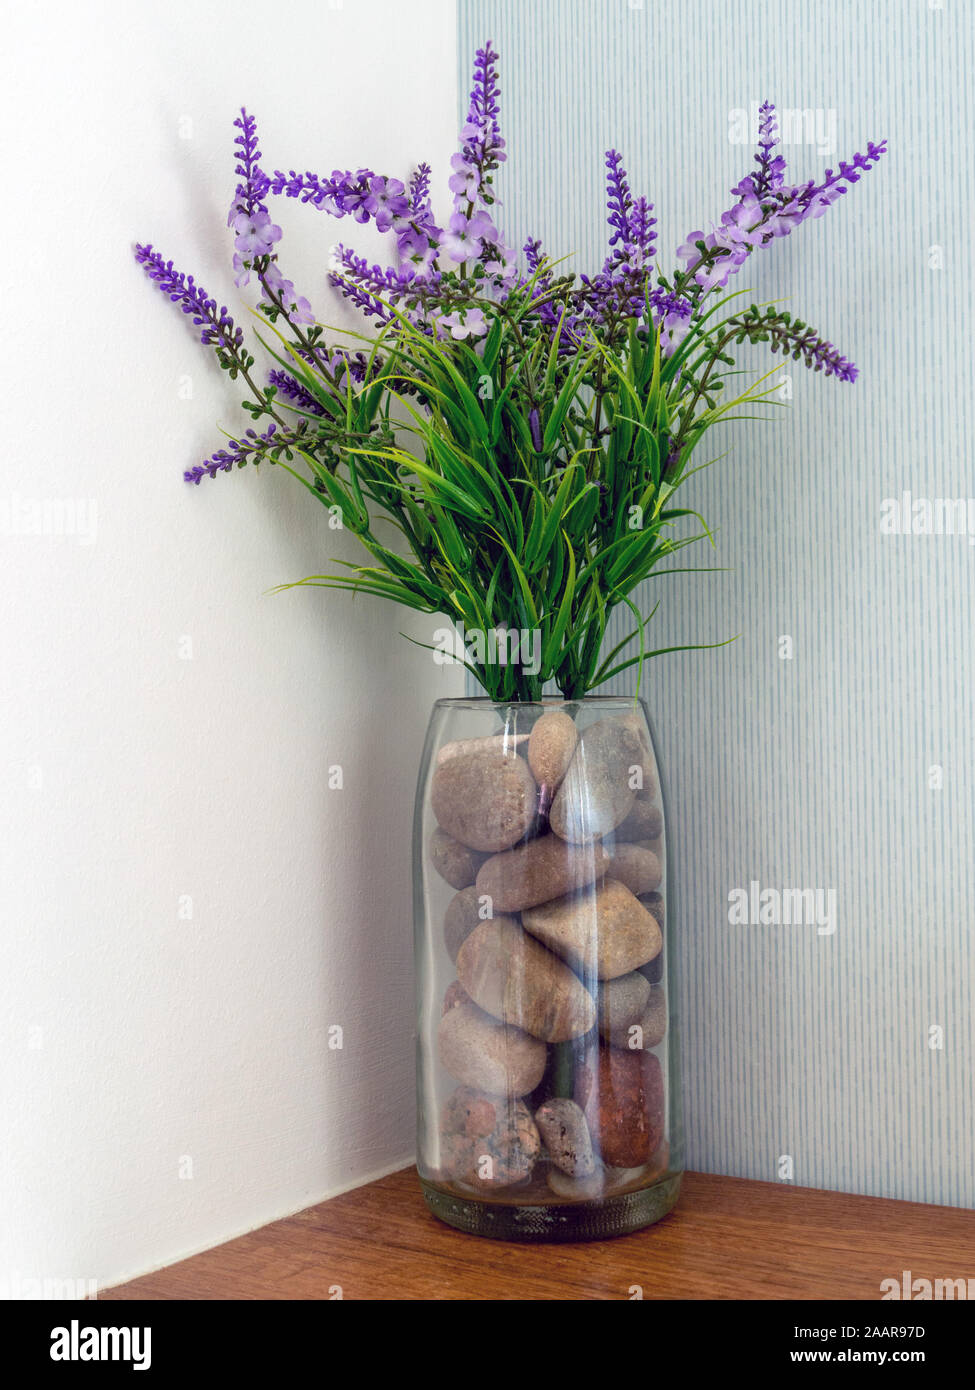 Simple et attrayant de l'arrangement de fleurs artificielles fleurs lavandes violets et des cailloux dans un vase de verre. Banque D'Images